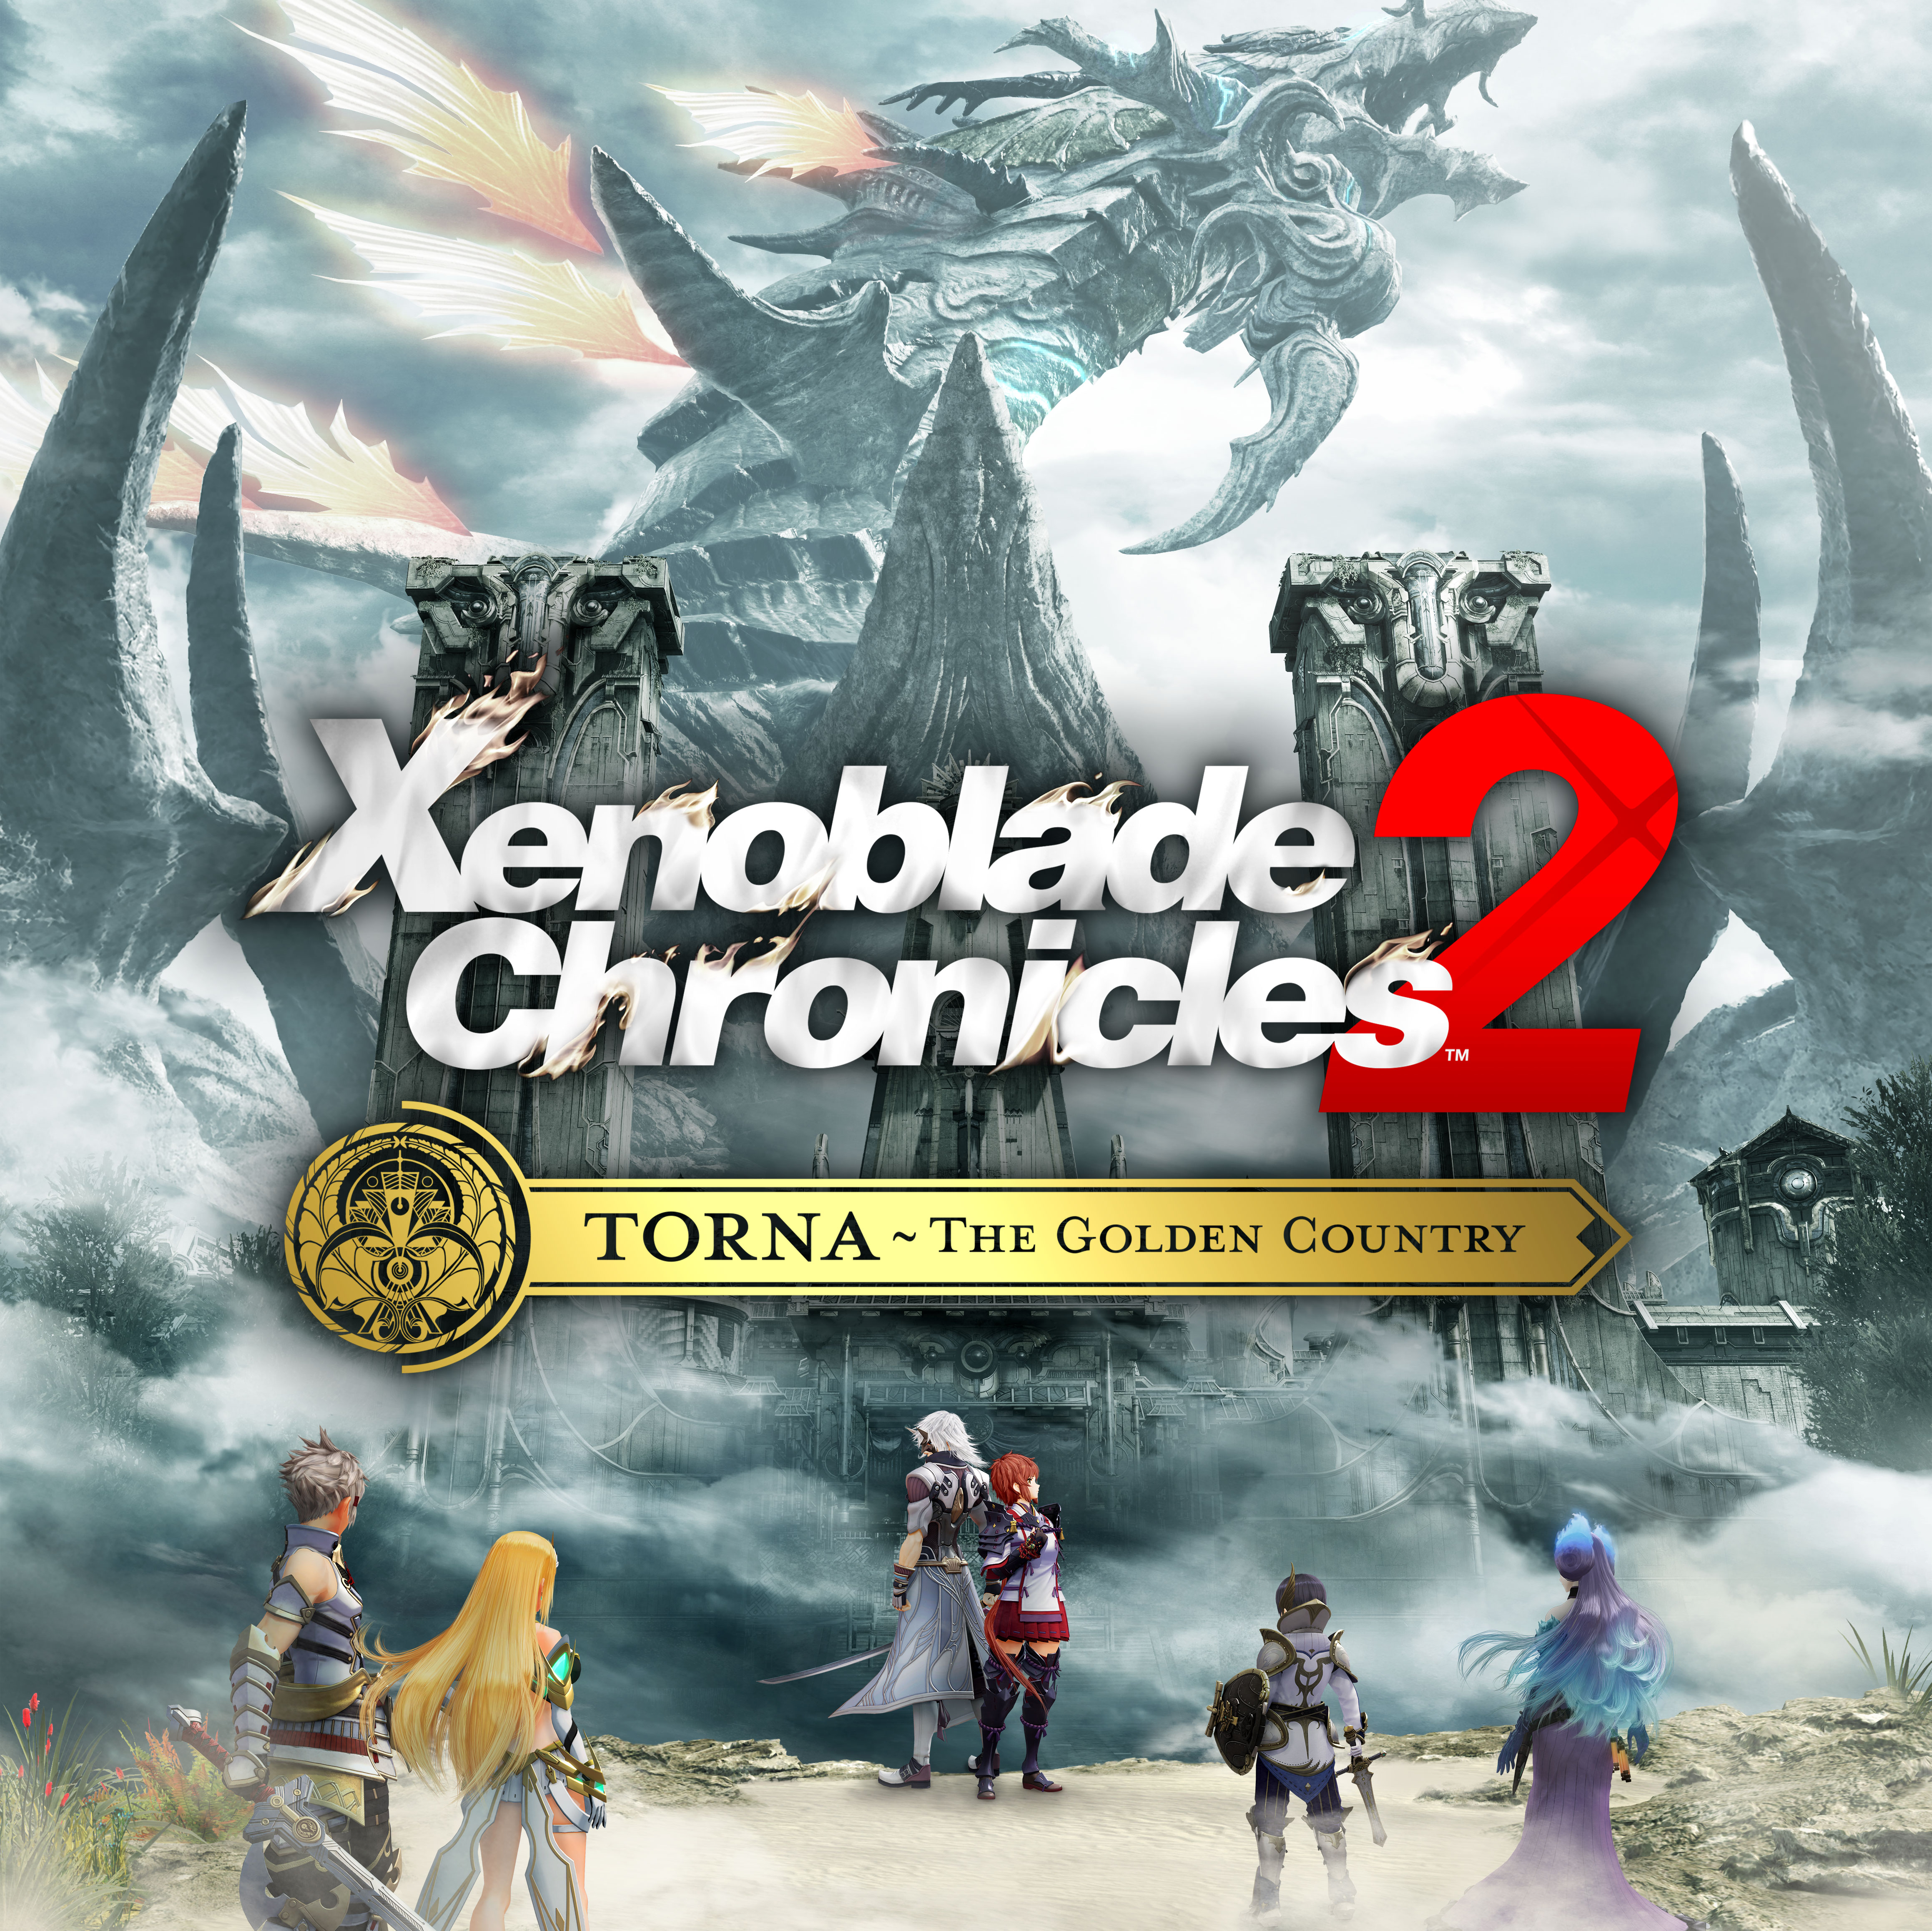 Tetsuya Takahashi von Monolith Soft verrät uns mehr zu Xenoblade Chronicles 2: Torna - The Golden Country